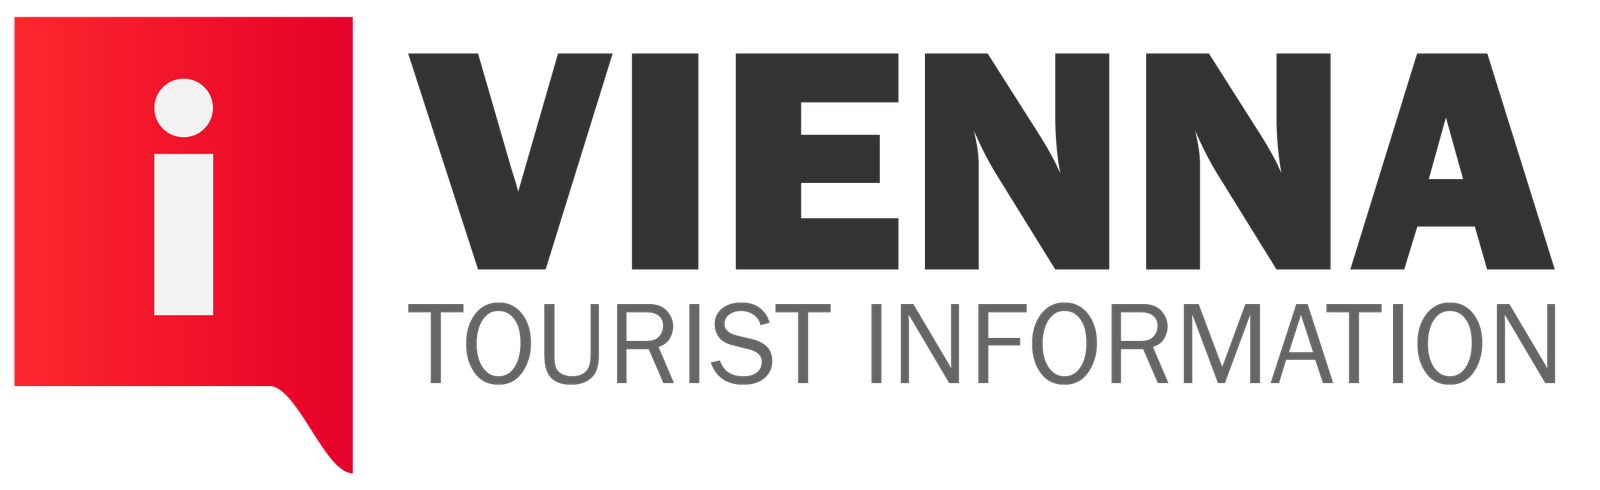 vienna tourist information